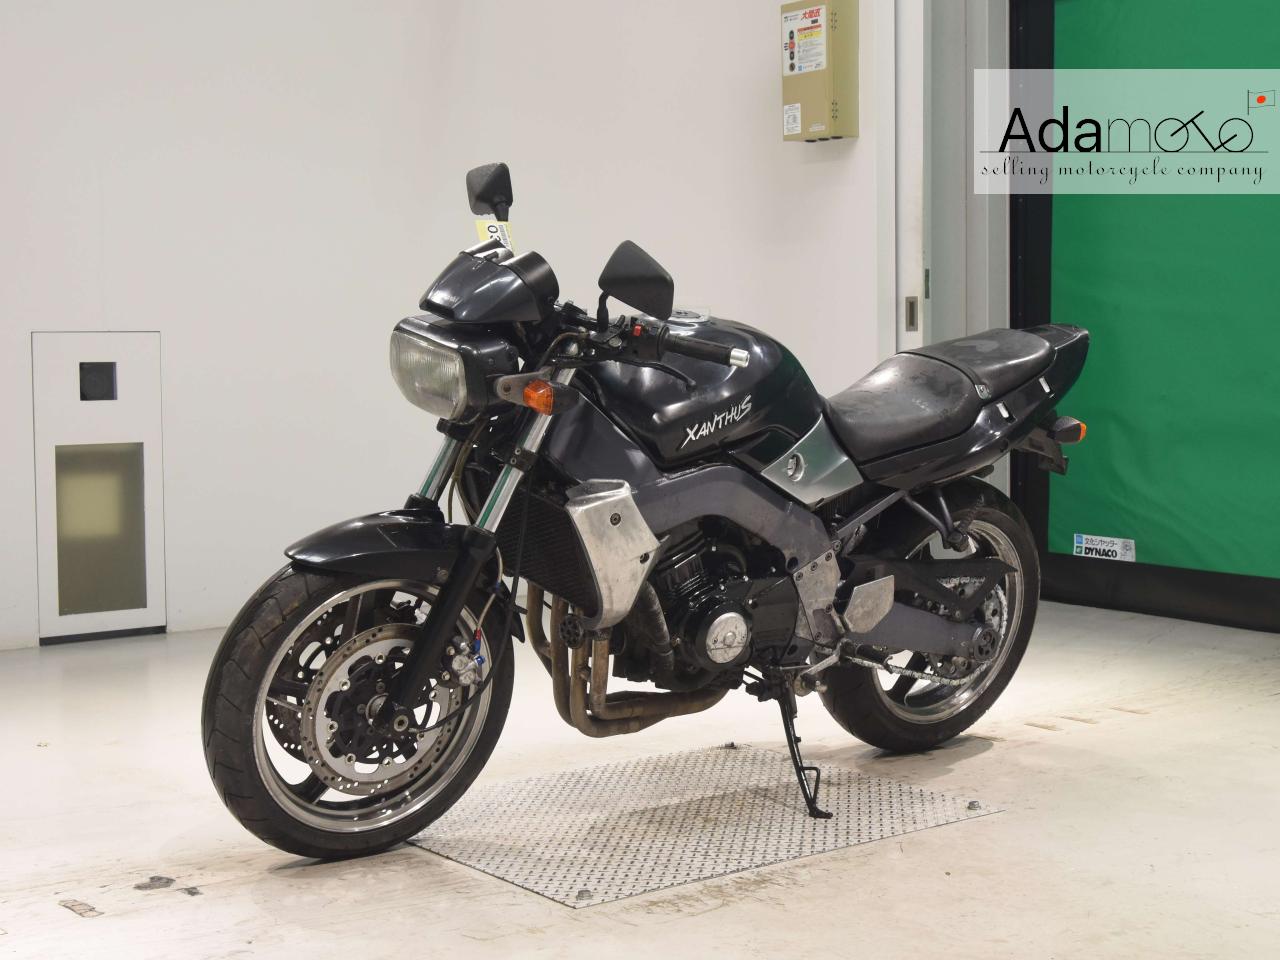 Kawasaki XANTHUS - Adamoto - Motorcycles from Japan